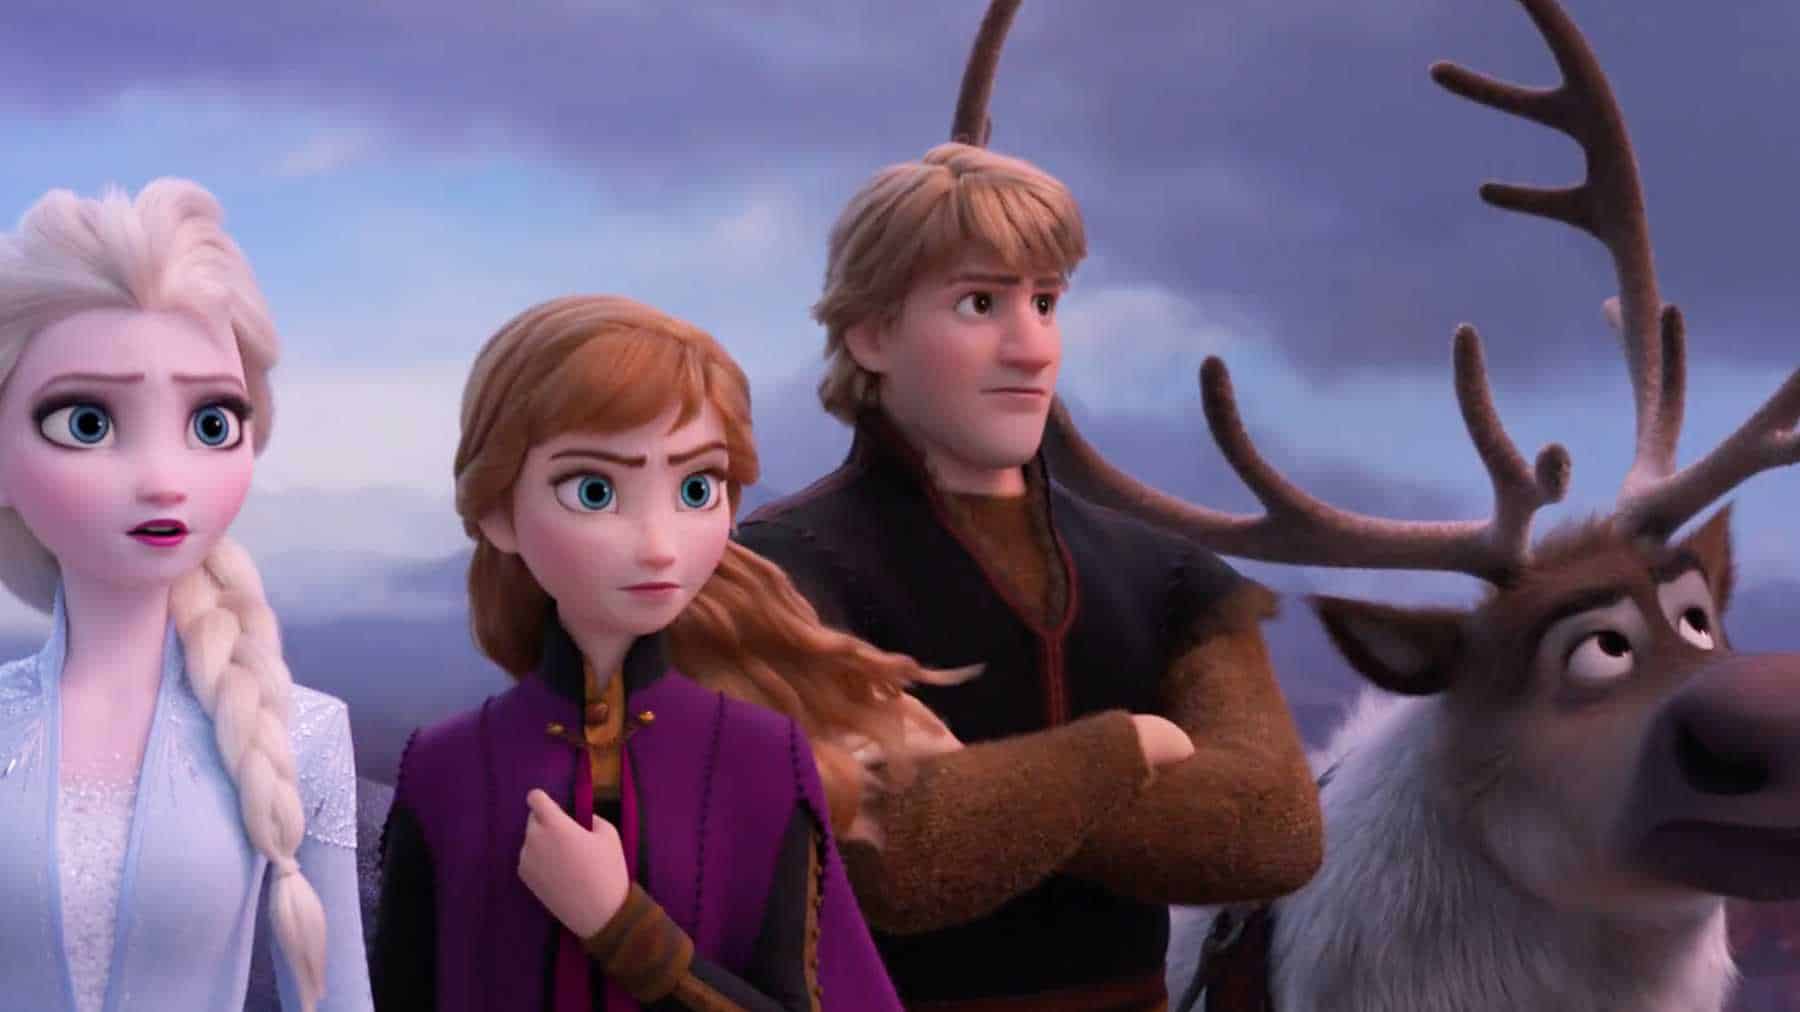 La reine des neiges 2 -Elsa et Anna sur les traces de leurs parents